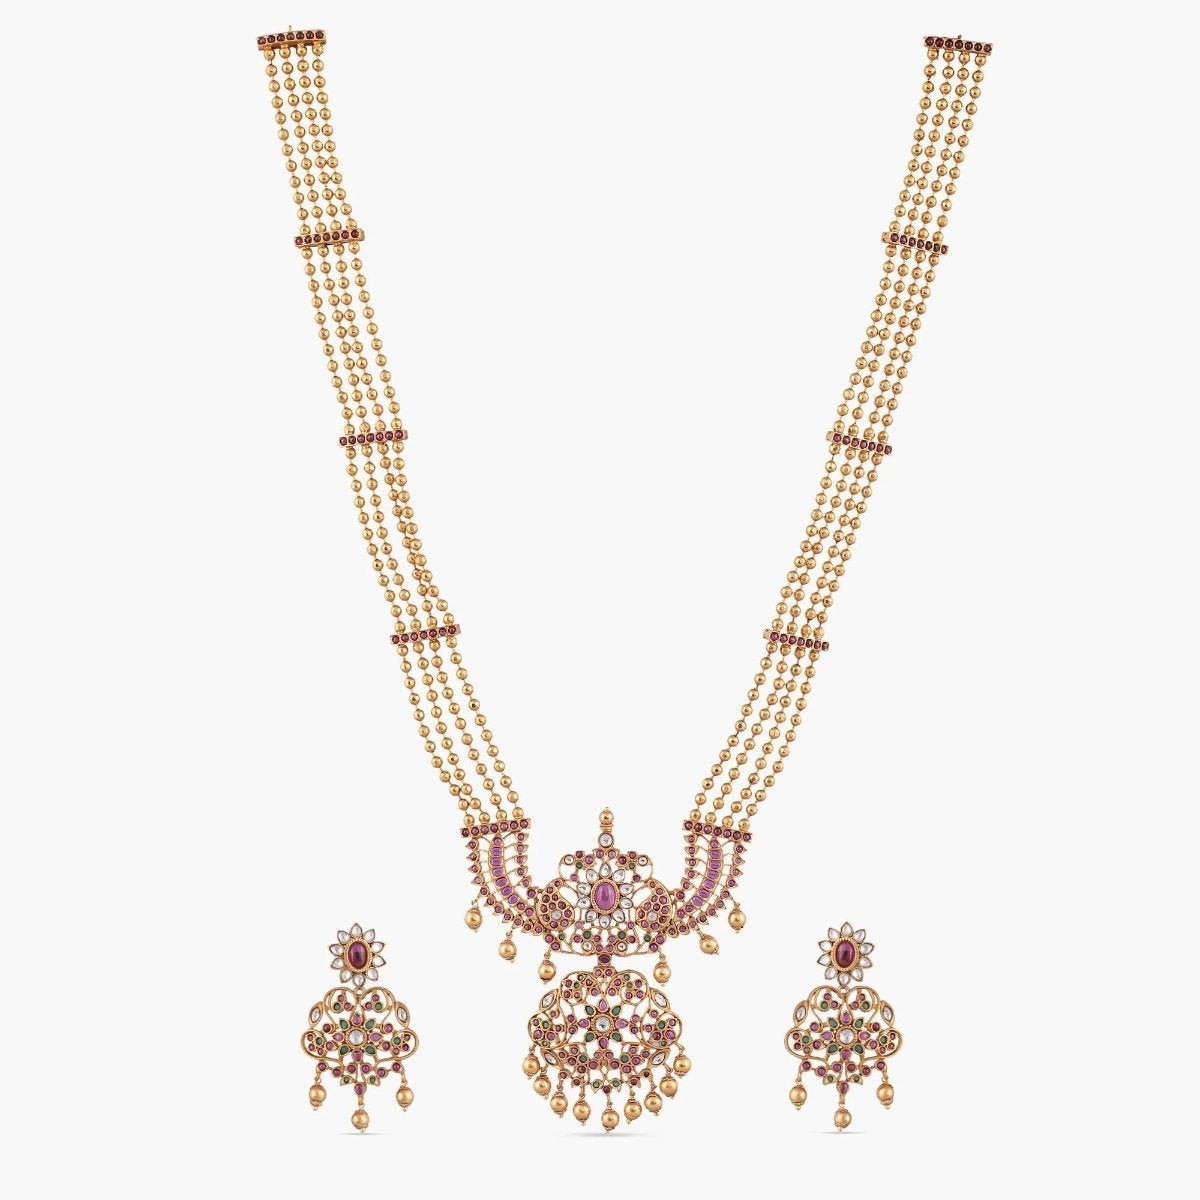 Irja Antique Long Necklace Set